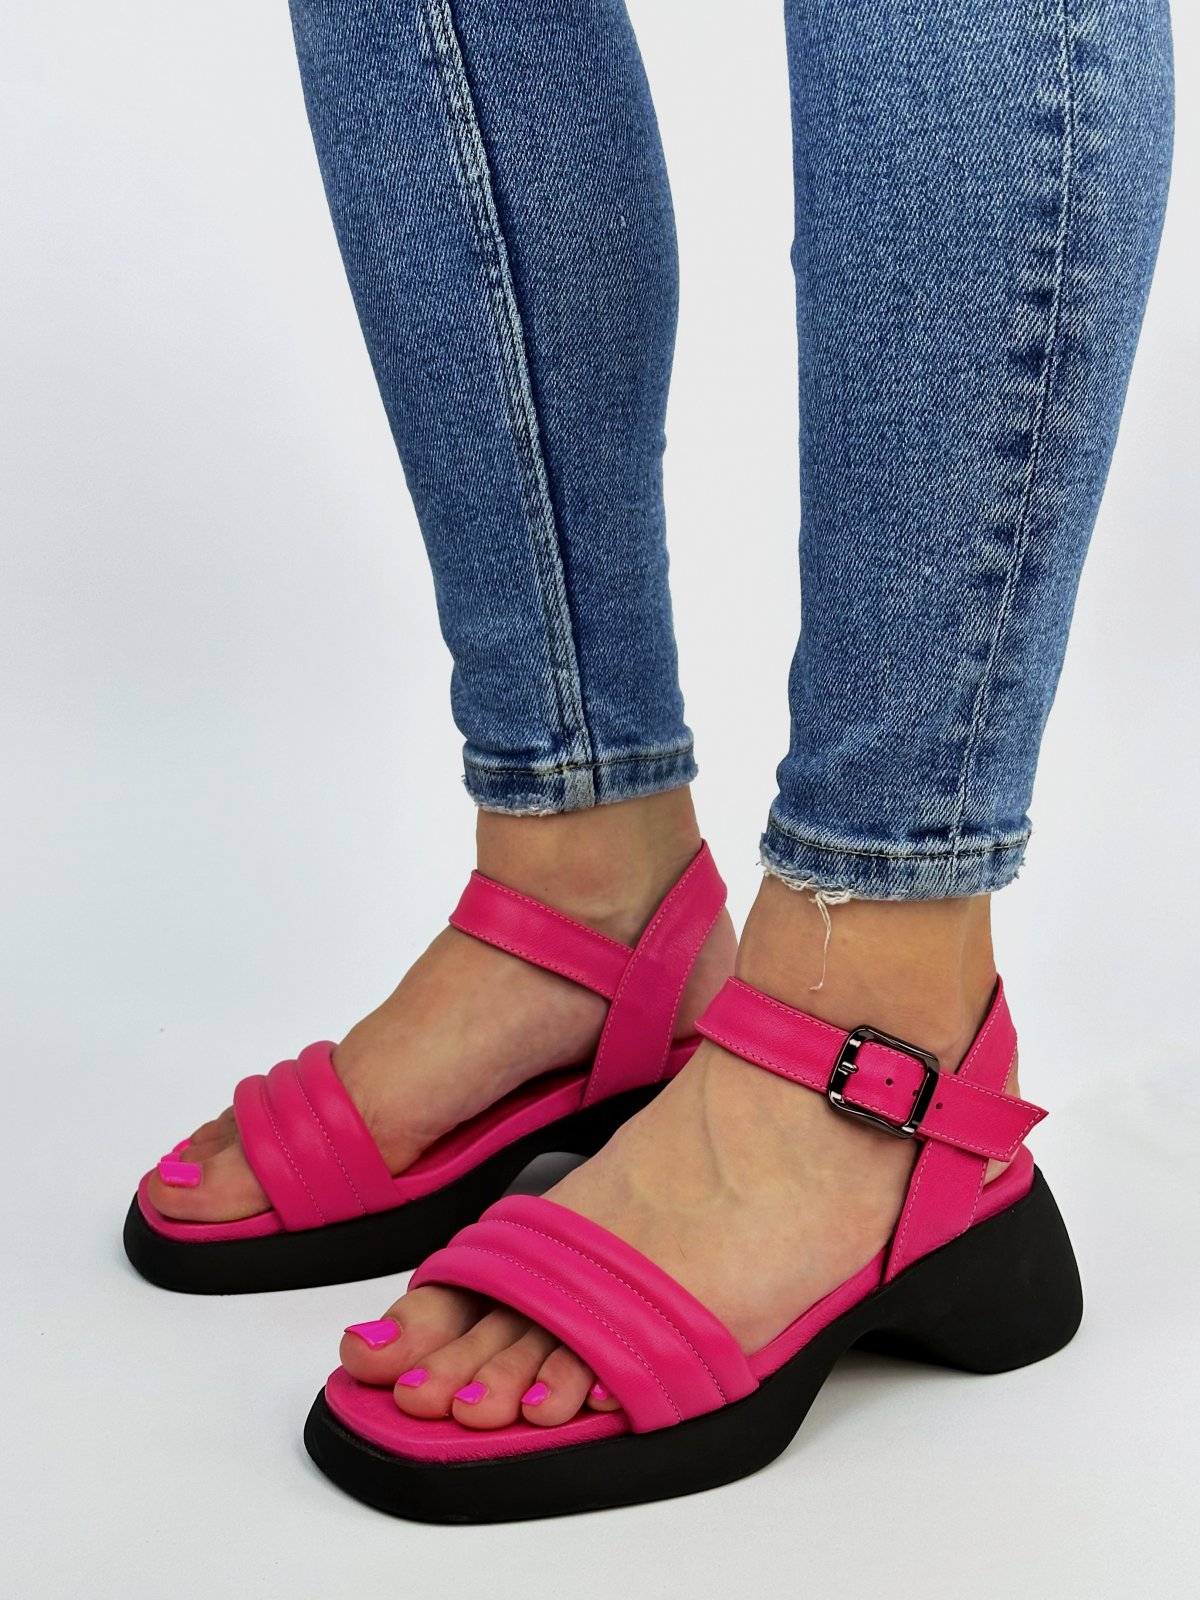 Фото: Яркие воздушные сандалии